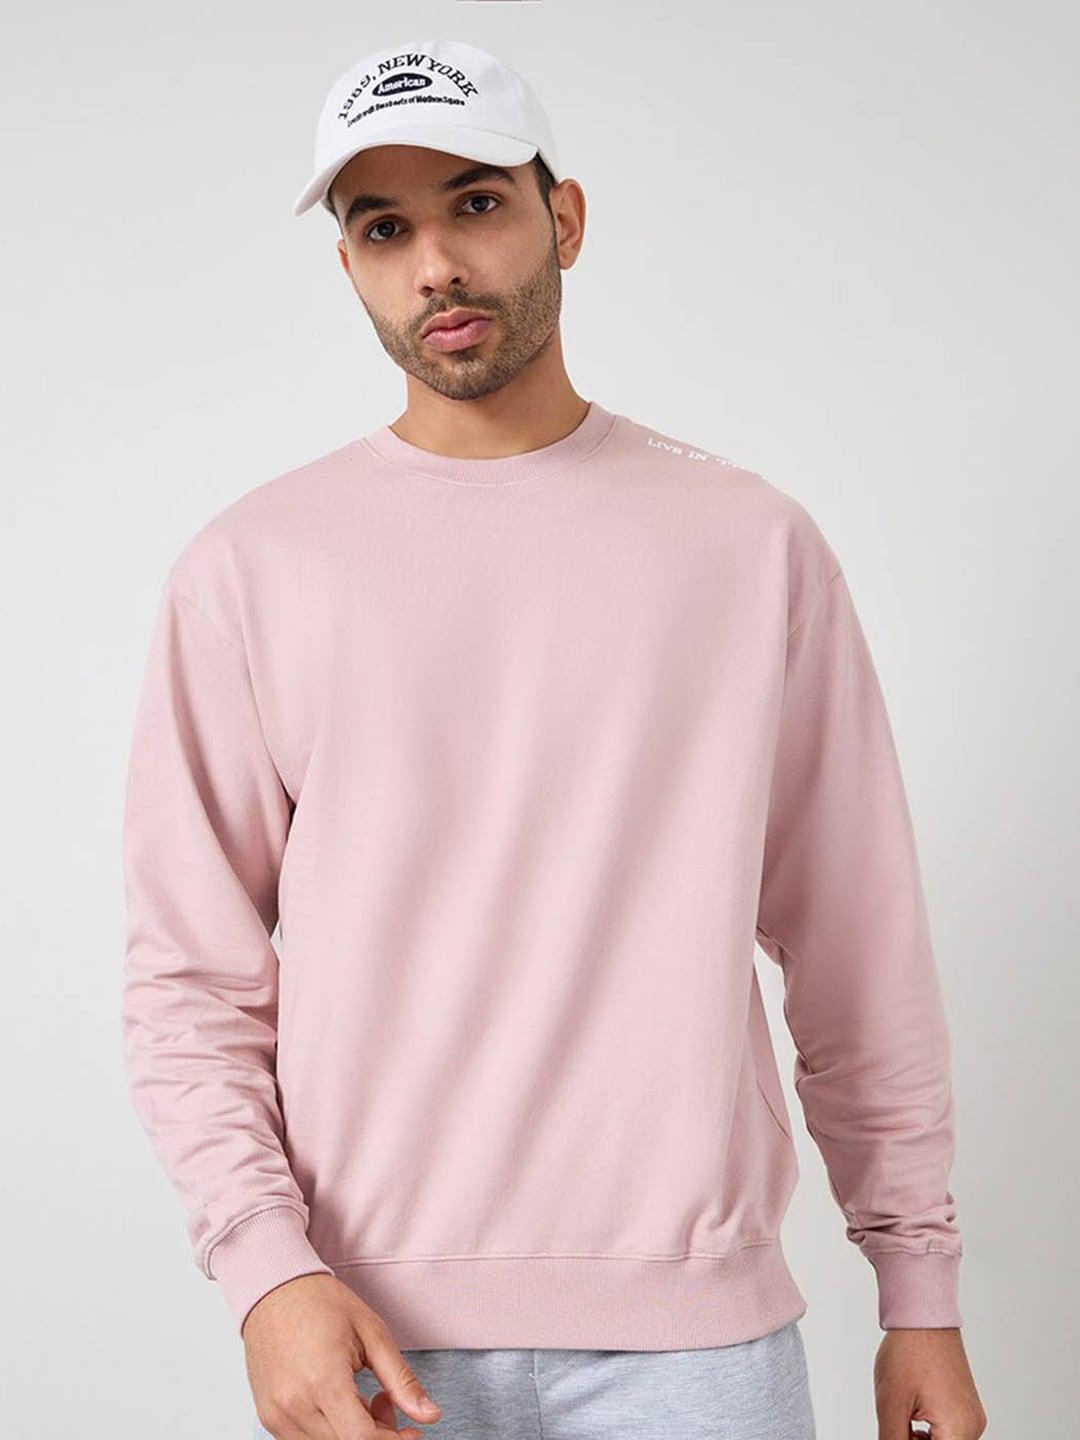 styli-round-neck-pure-cotton-pullover-sweatshirt